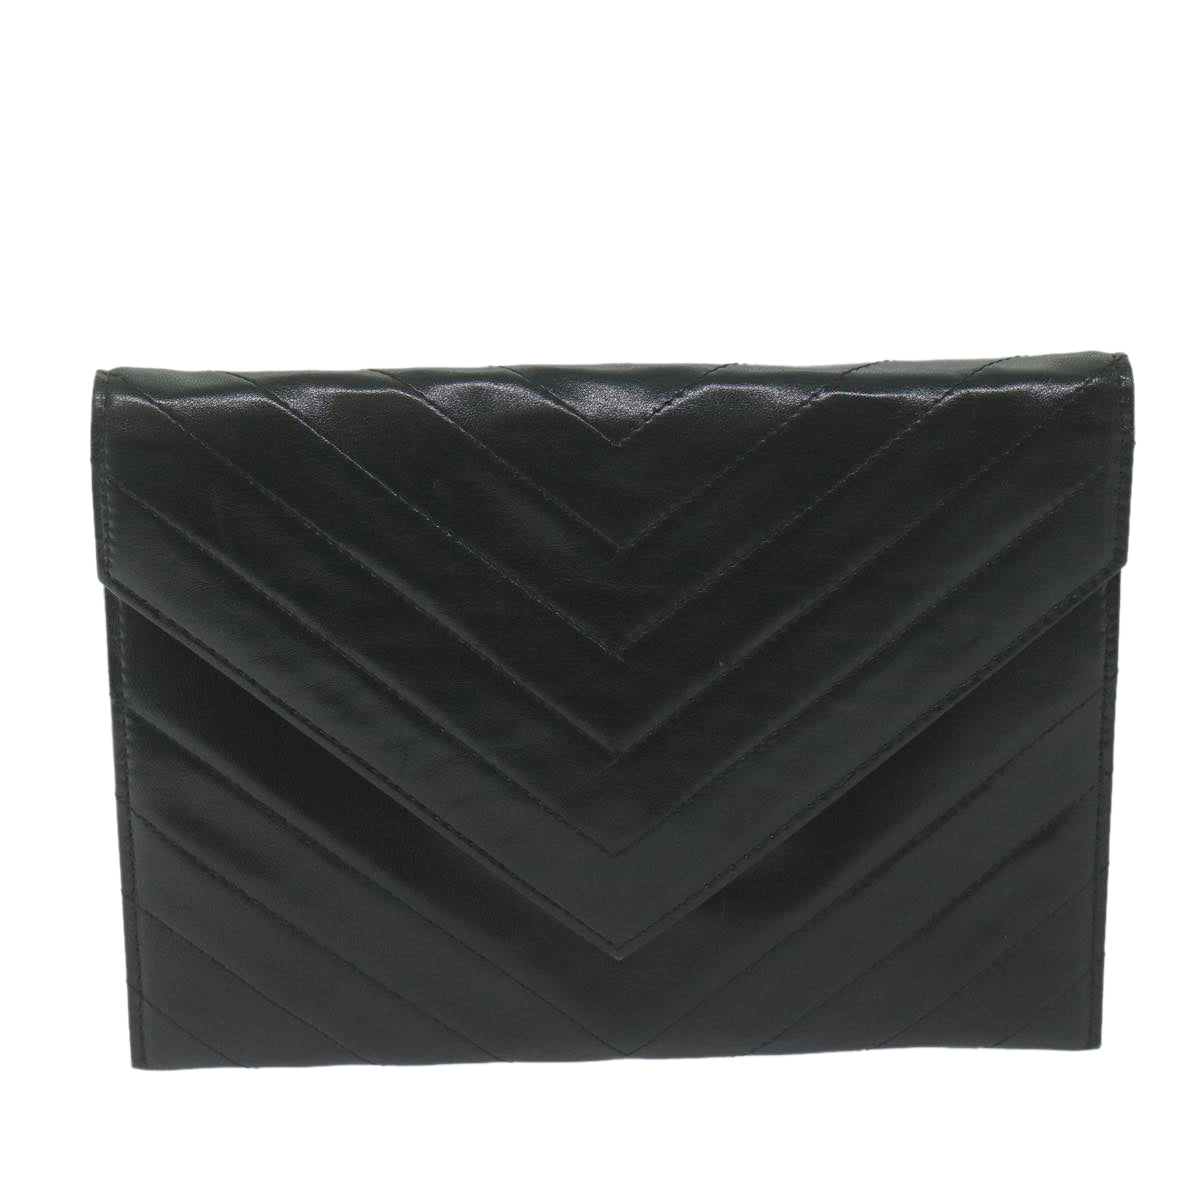 SAINT LAURENT Clutch Bag Leather Black Auth 63896 - 0